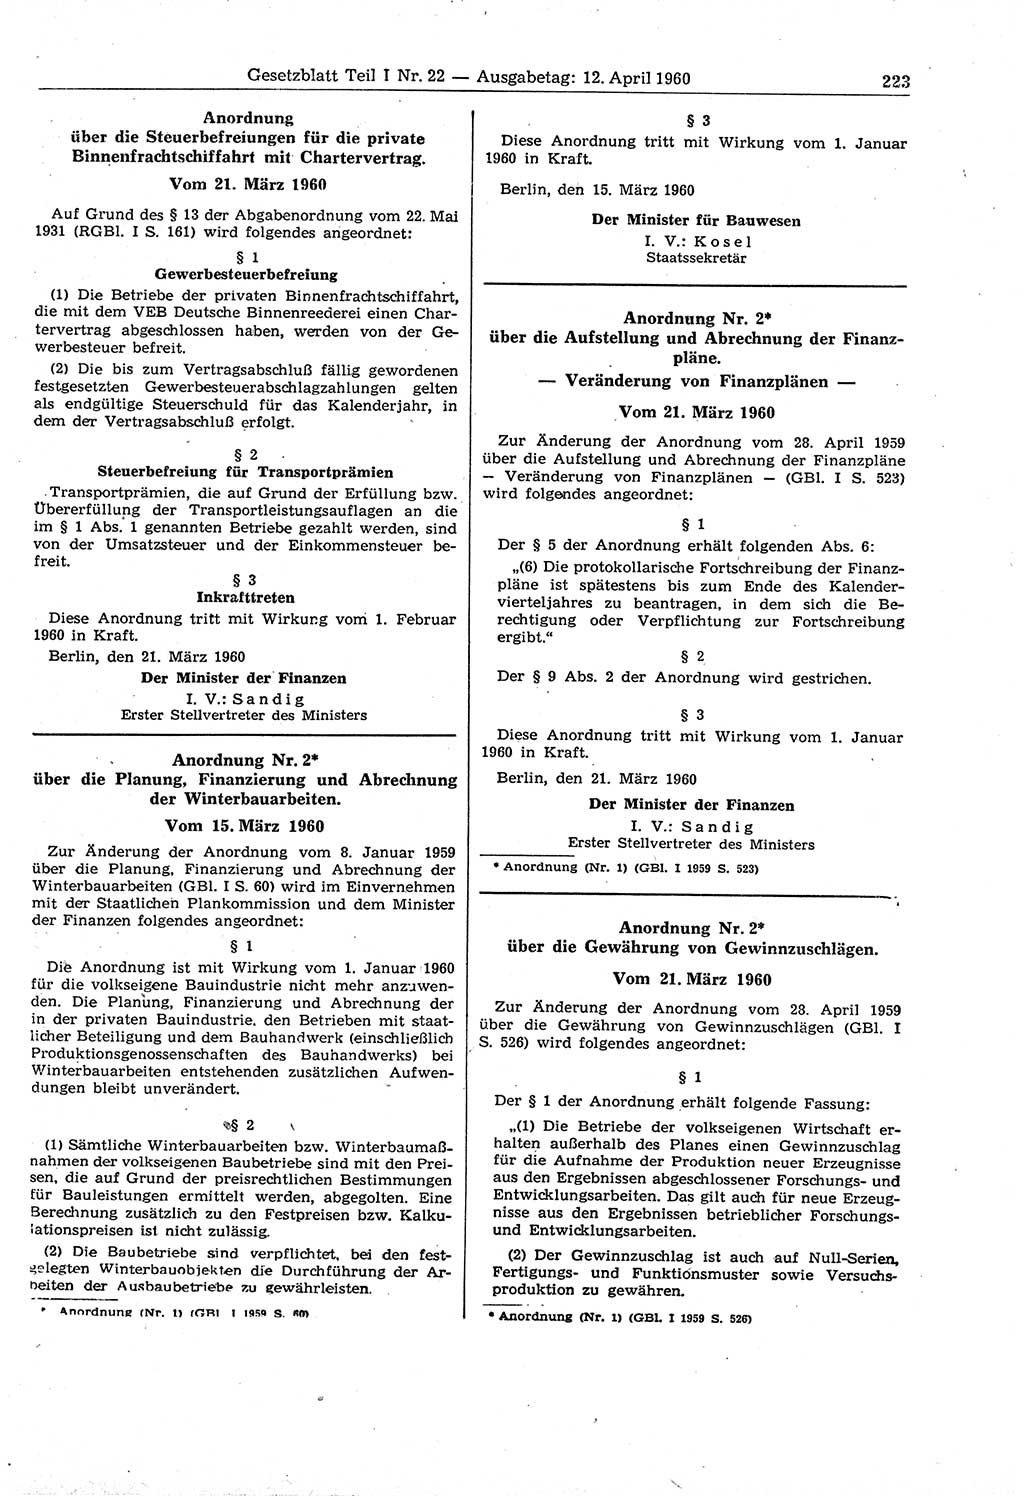 Gesetzblatt (GBl.) der Deutschen Demokratischen Republik (DDR) Teil Ⅰ 1960, Seite 223 (GBl. DDR Ⅰ 1960, S. 223)